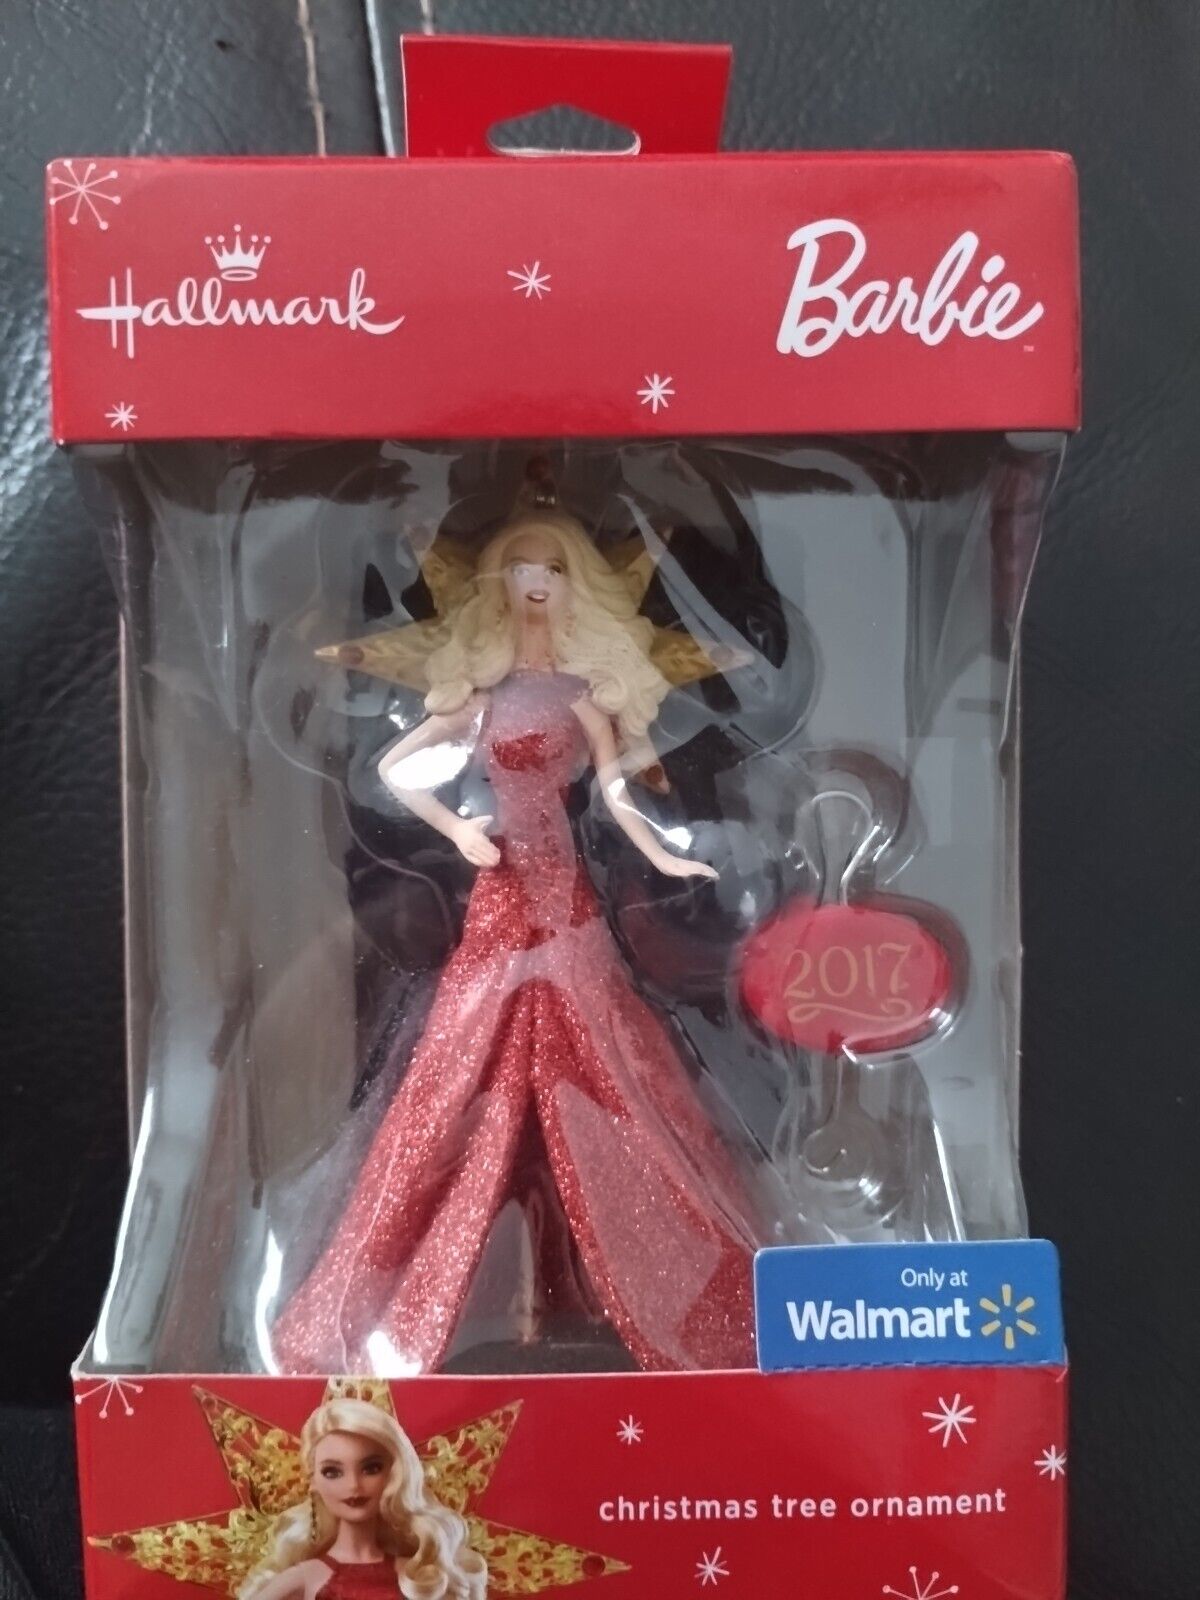 2017 Holiday  Barbie Christmas Ornament by Hallmark Very Rare